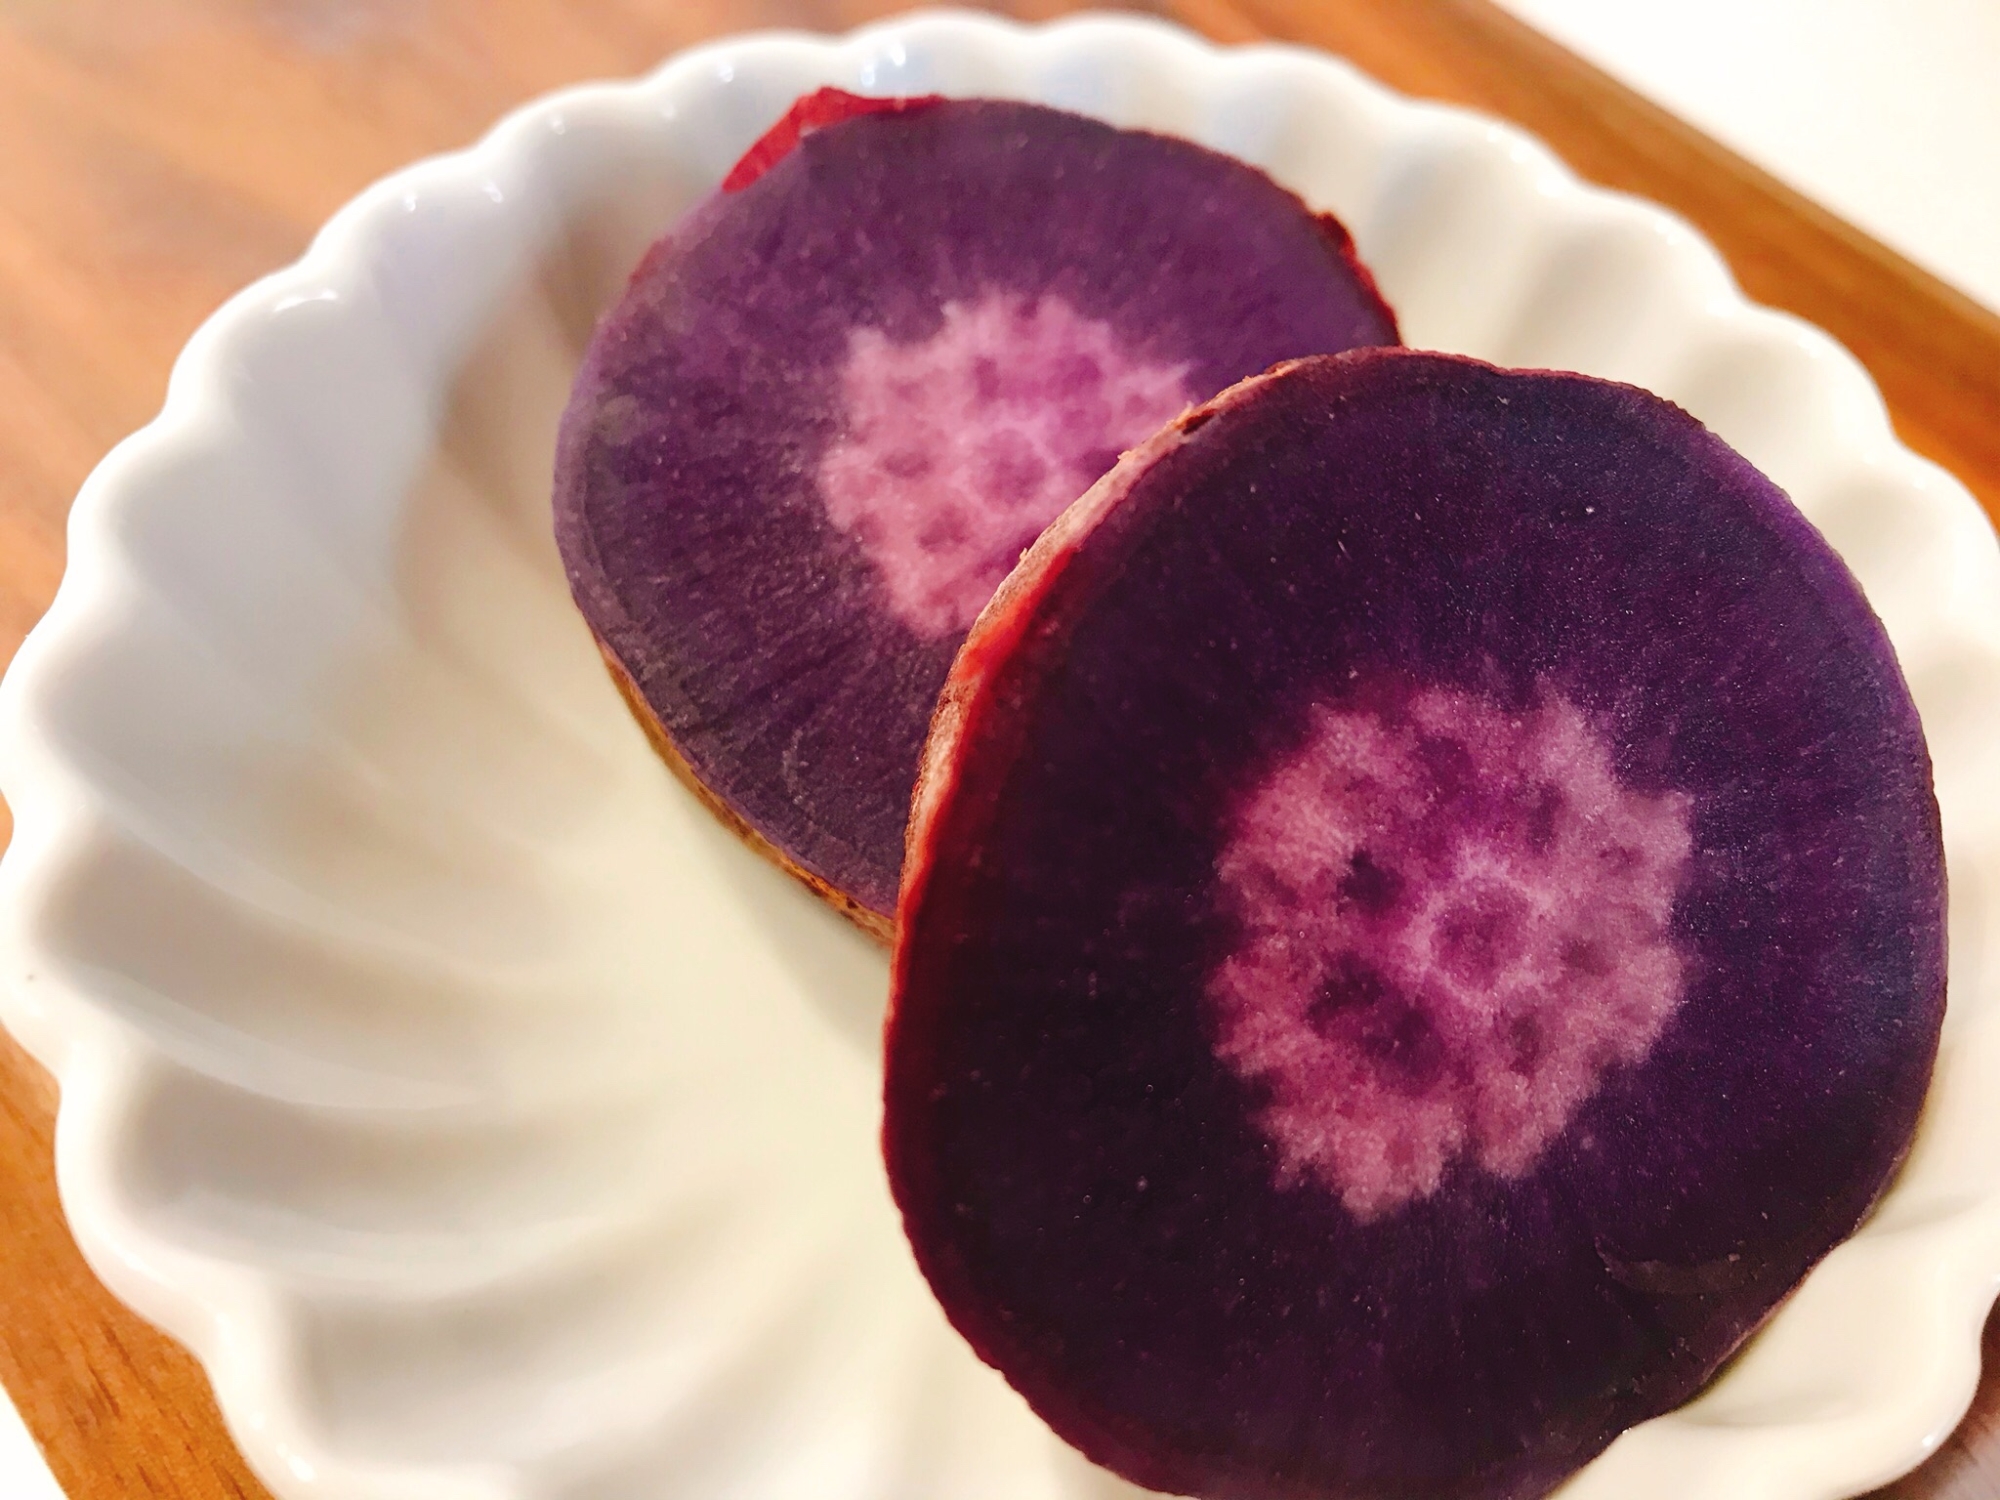 炊飯器de蒸かし紫芋(パープルスイートロード）